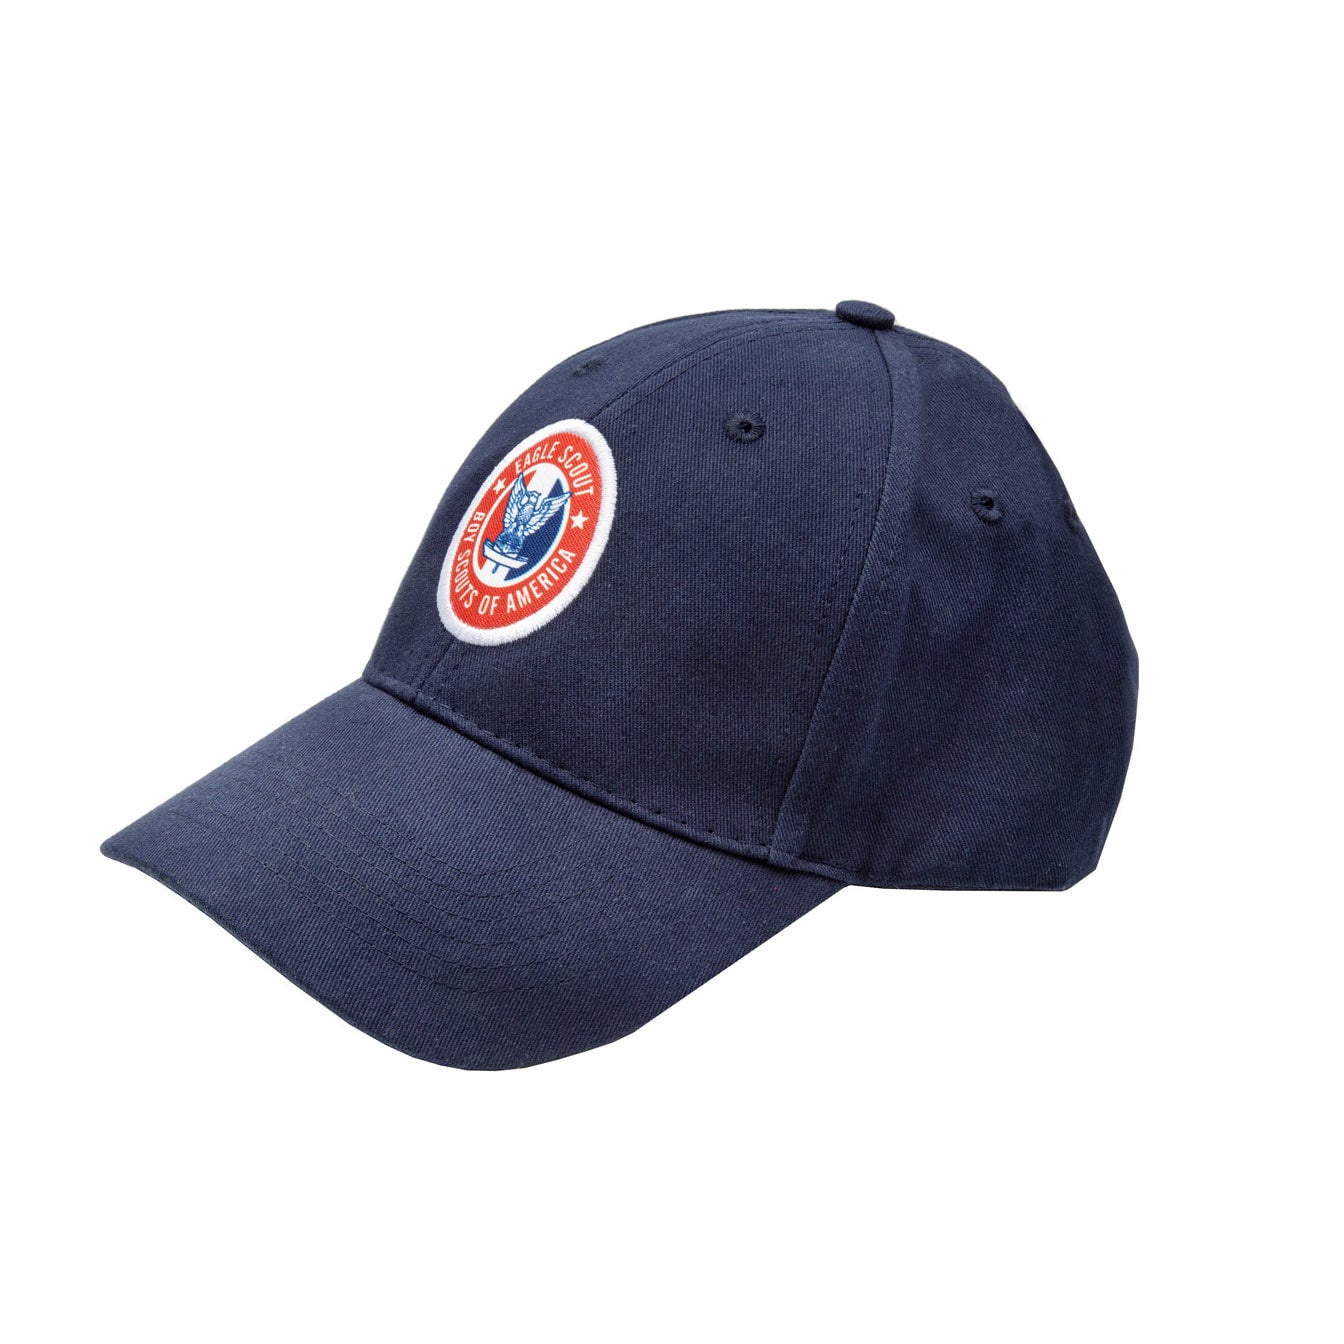 Scouts BSA Adjustable Uniform Cap, Adult - Official Uniform Cap for Scouts  BSA members and leaders